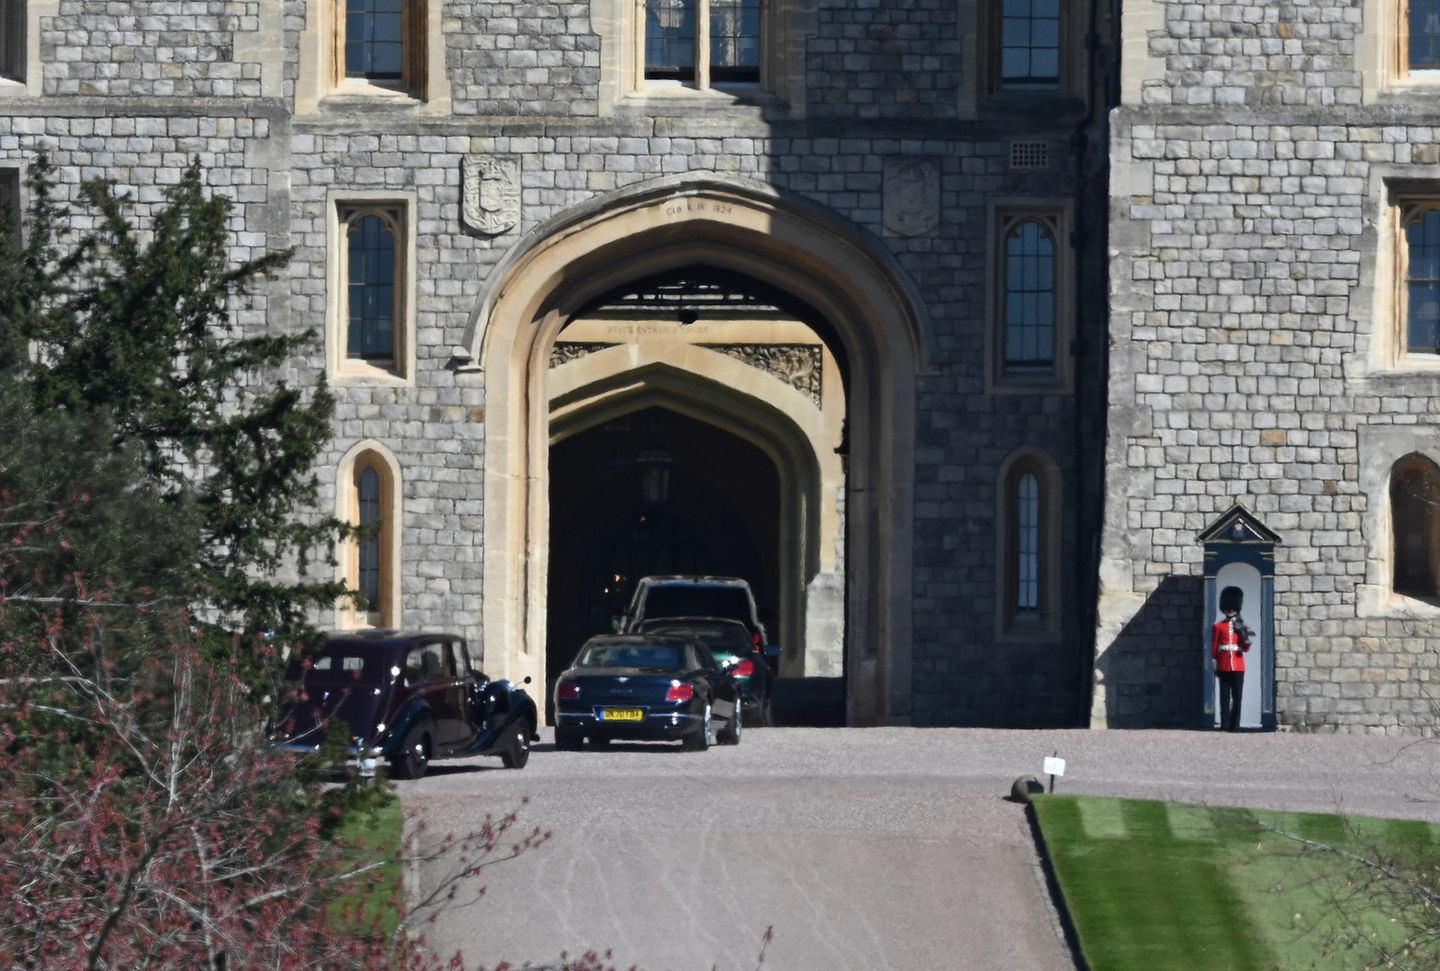 Und auch treffen auf Schloss Windsor schon die ersten Trauergäste ein. Wer in den Autos sitzt ist allerdings noch nicht bekannt.